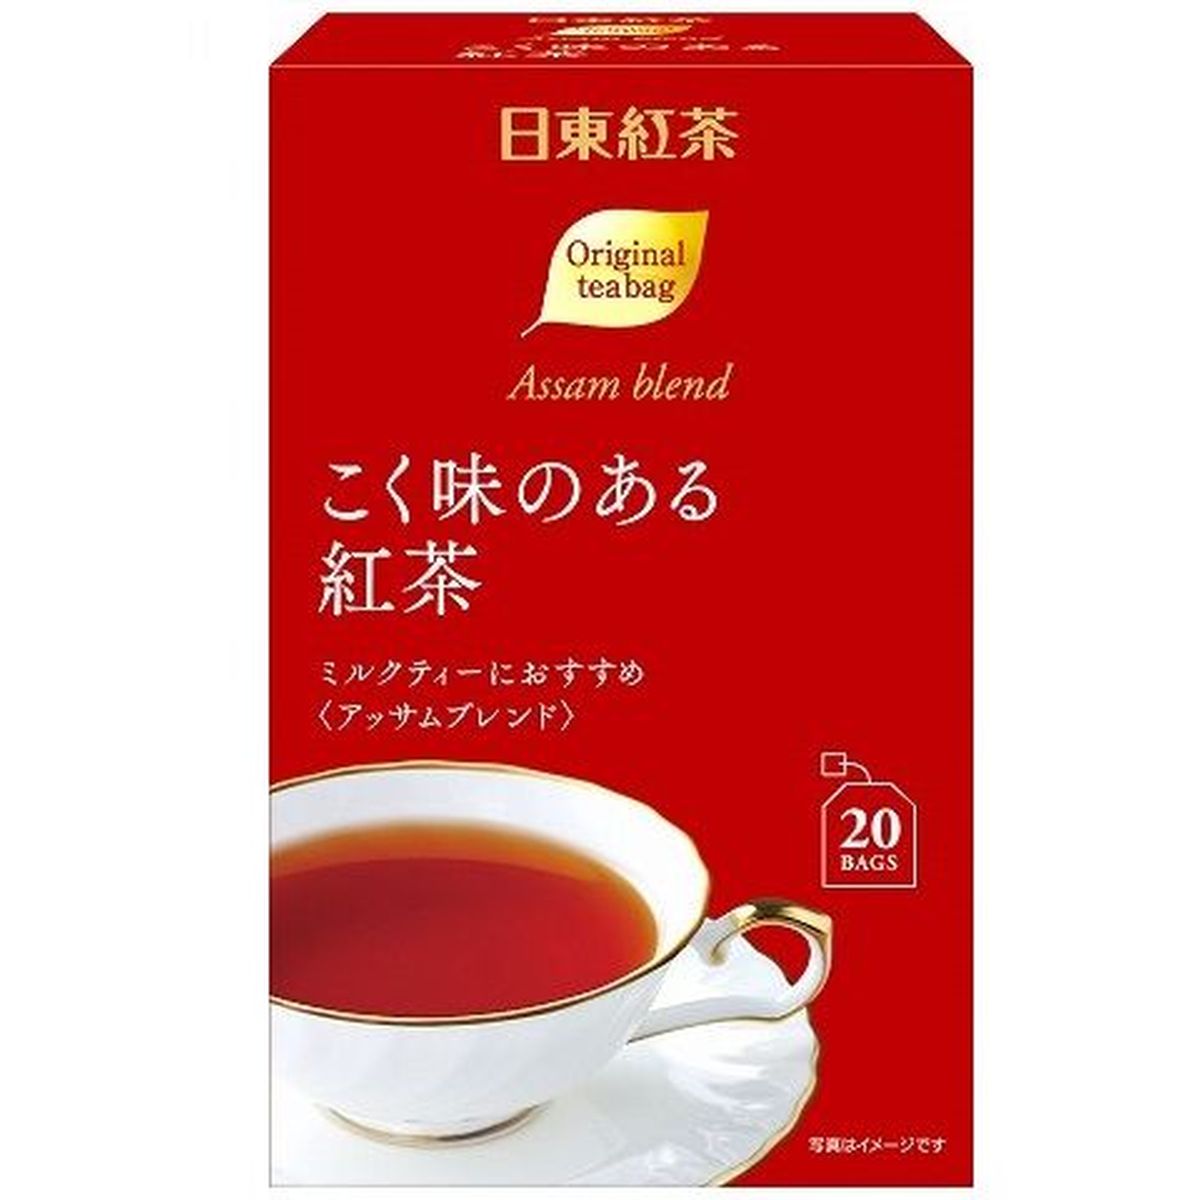 【6個入リ】日東紅茶 コク味ノアル紅茶 ティーバッグ 2gX20袋